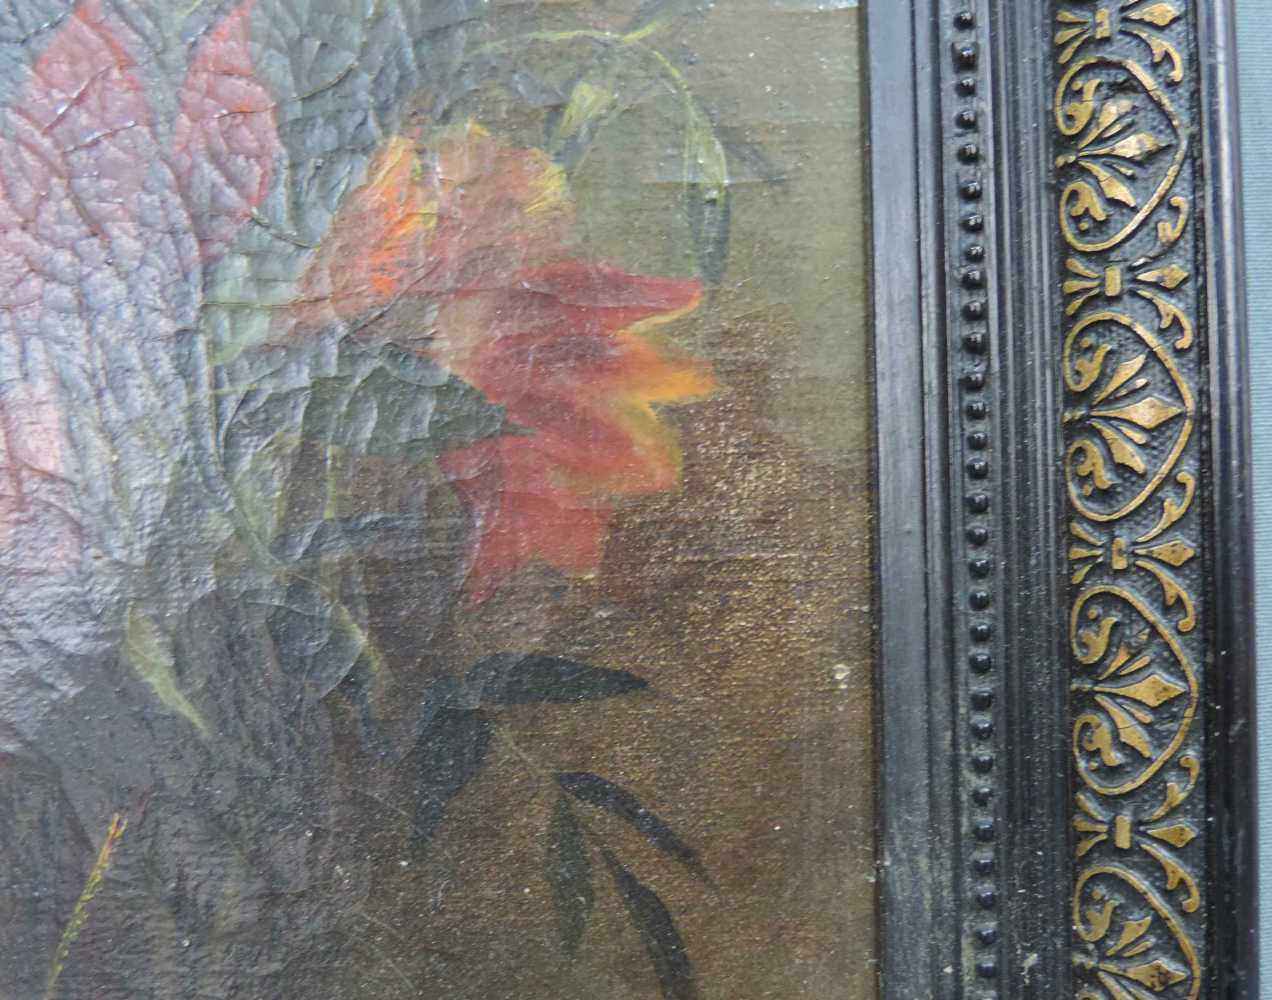 UNSIGNIERT (XIX). Stillleben mit Blumen. 28 cm x 37,5 cm. Gemälde, Öl auf Leinwand. NOT SIGNED ( - Image 4 of 7